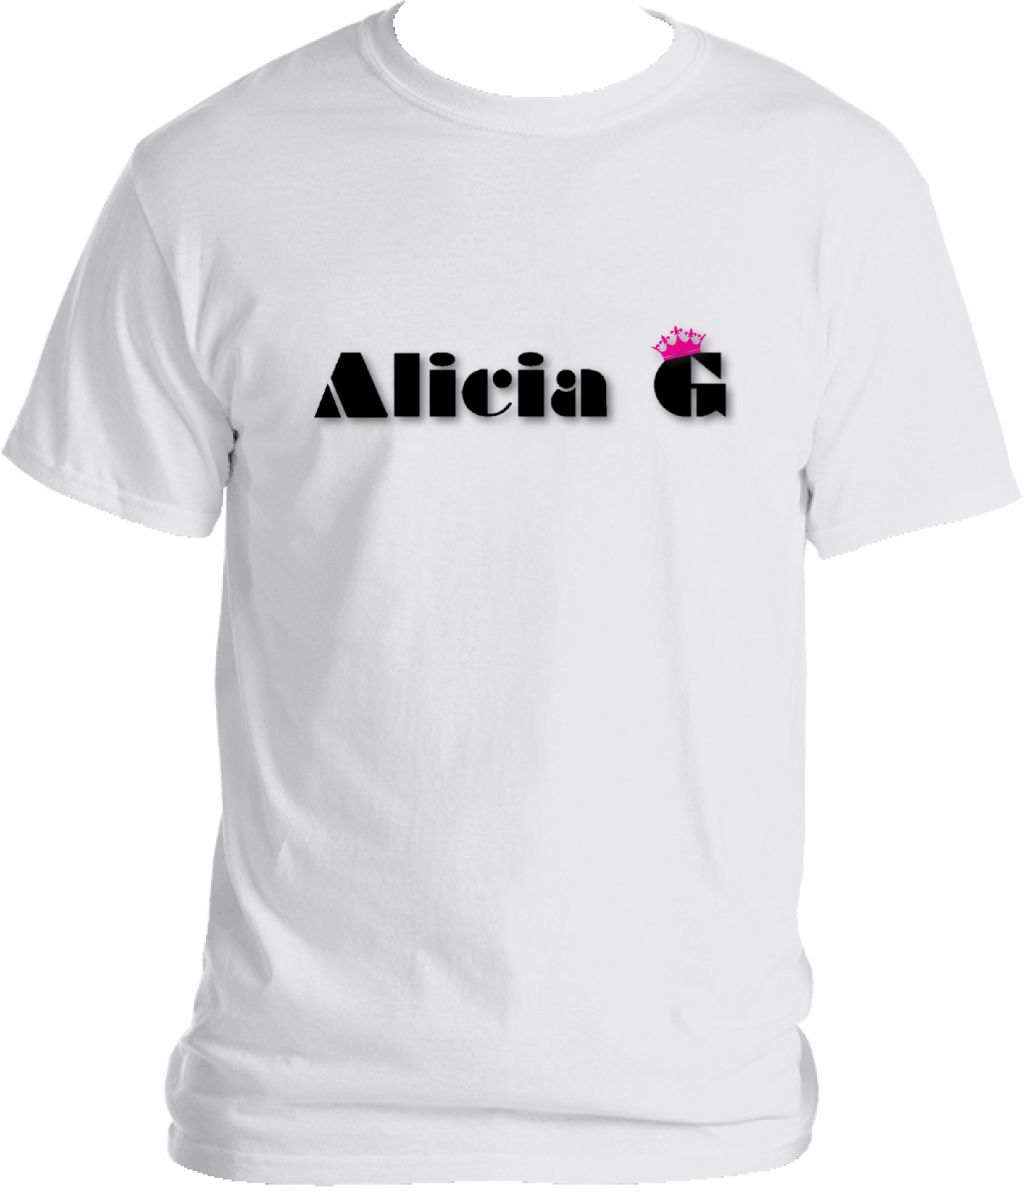 Official Alicia G Logo T-Shirt